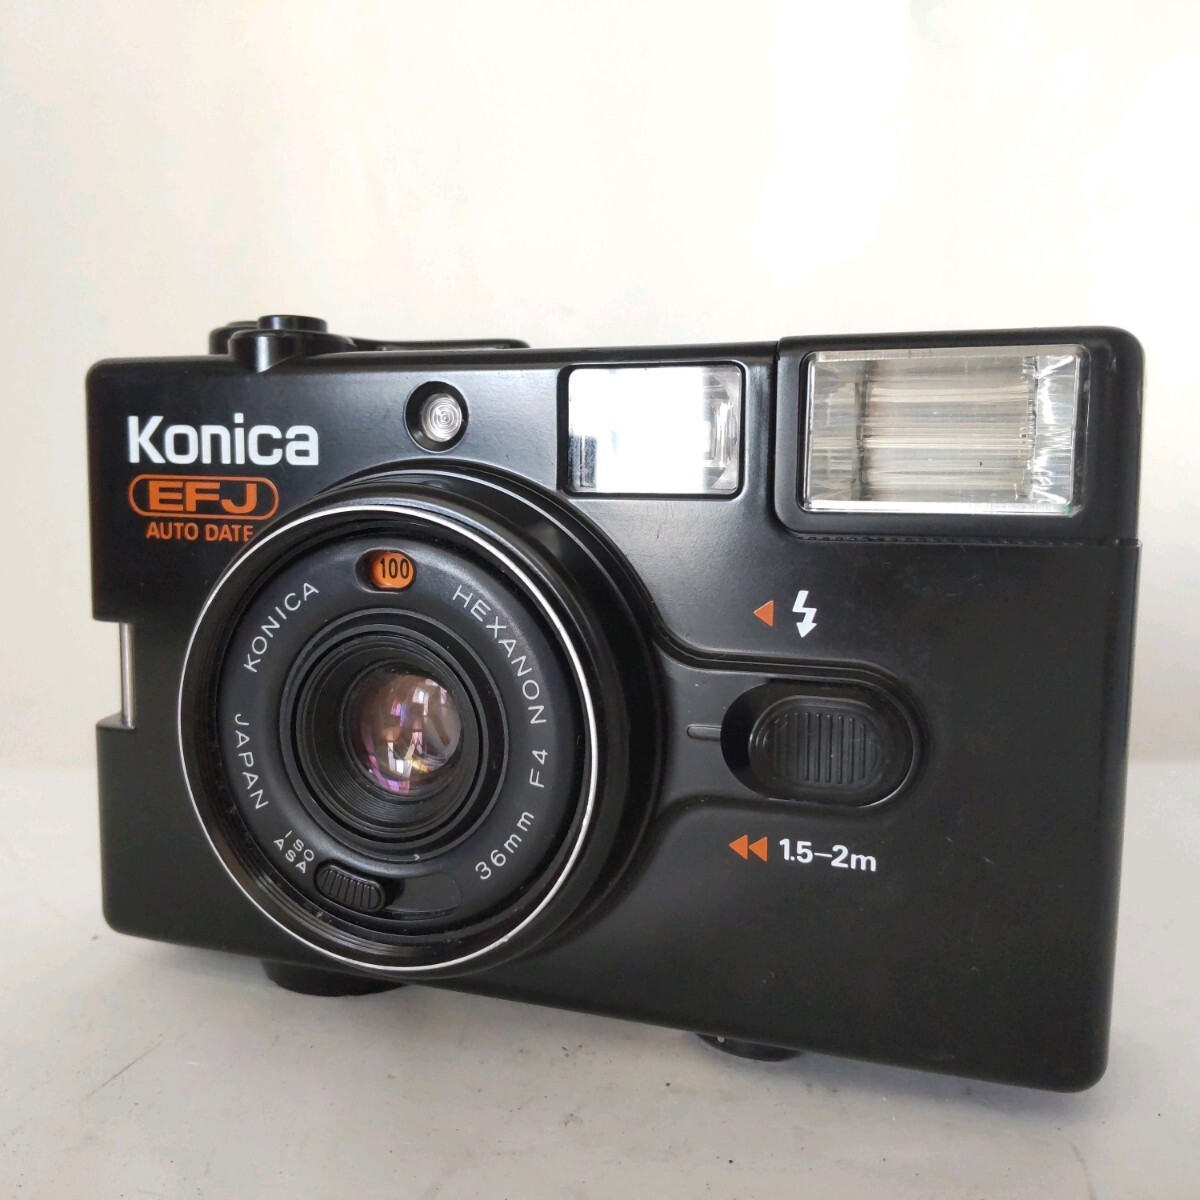 ★良品★ KONICA コニカ EFJ AUTO DATE コンパクトフィルムカメラ #197